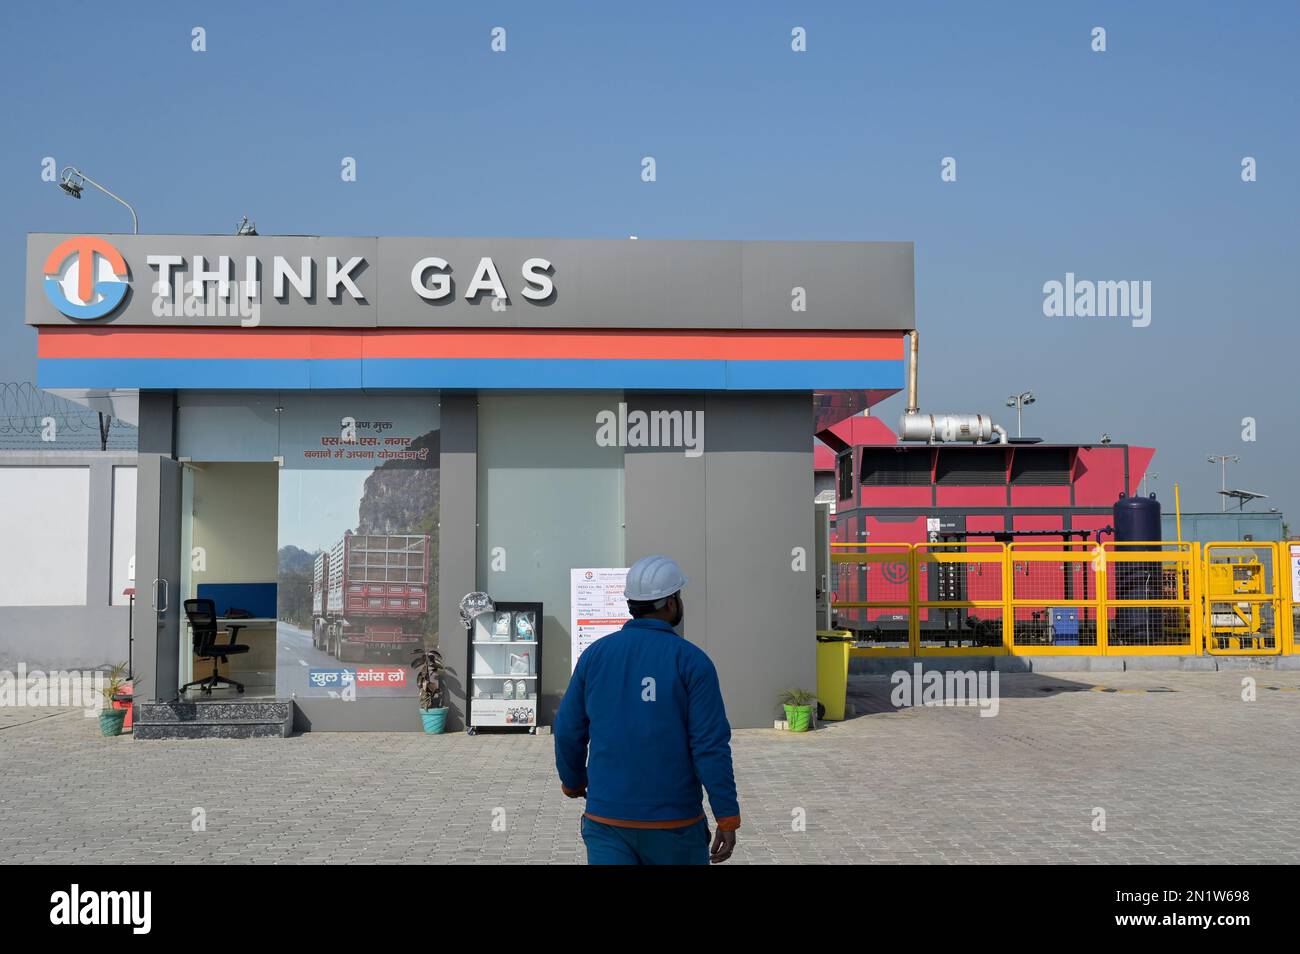 INDE, Punjab, Think Gas GNC station de gaz naturel comprimé / INDIEN, Think Gas Tankstelle für GNC komprimiertes Erdgas, Methangas Banque D'Images